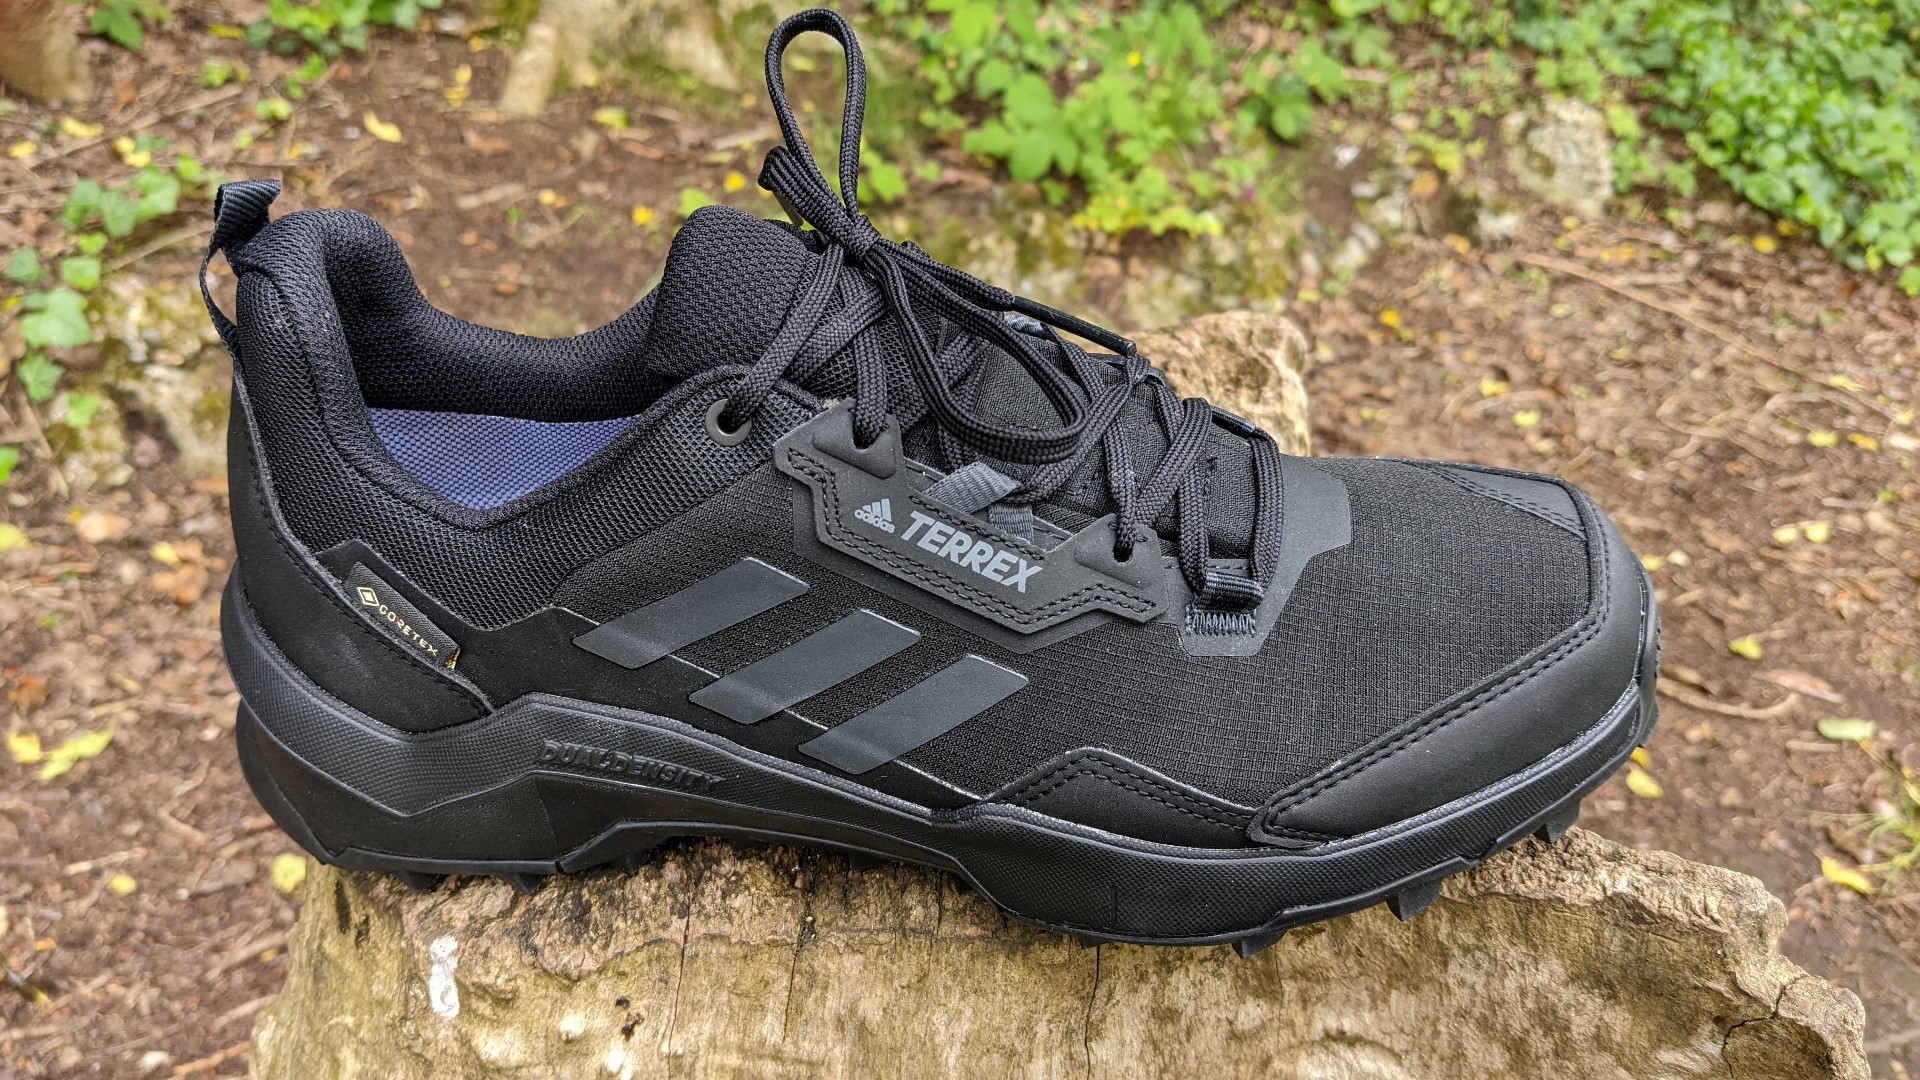 Adidas Terrex adidas ax 4 gtx AX4 GTX hiking shoes review | T3